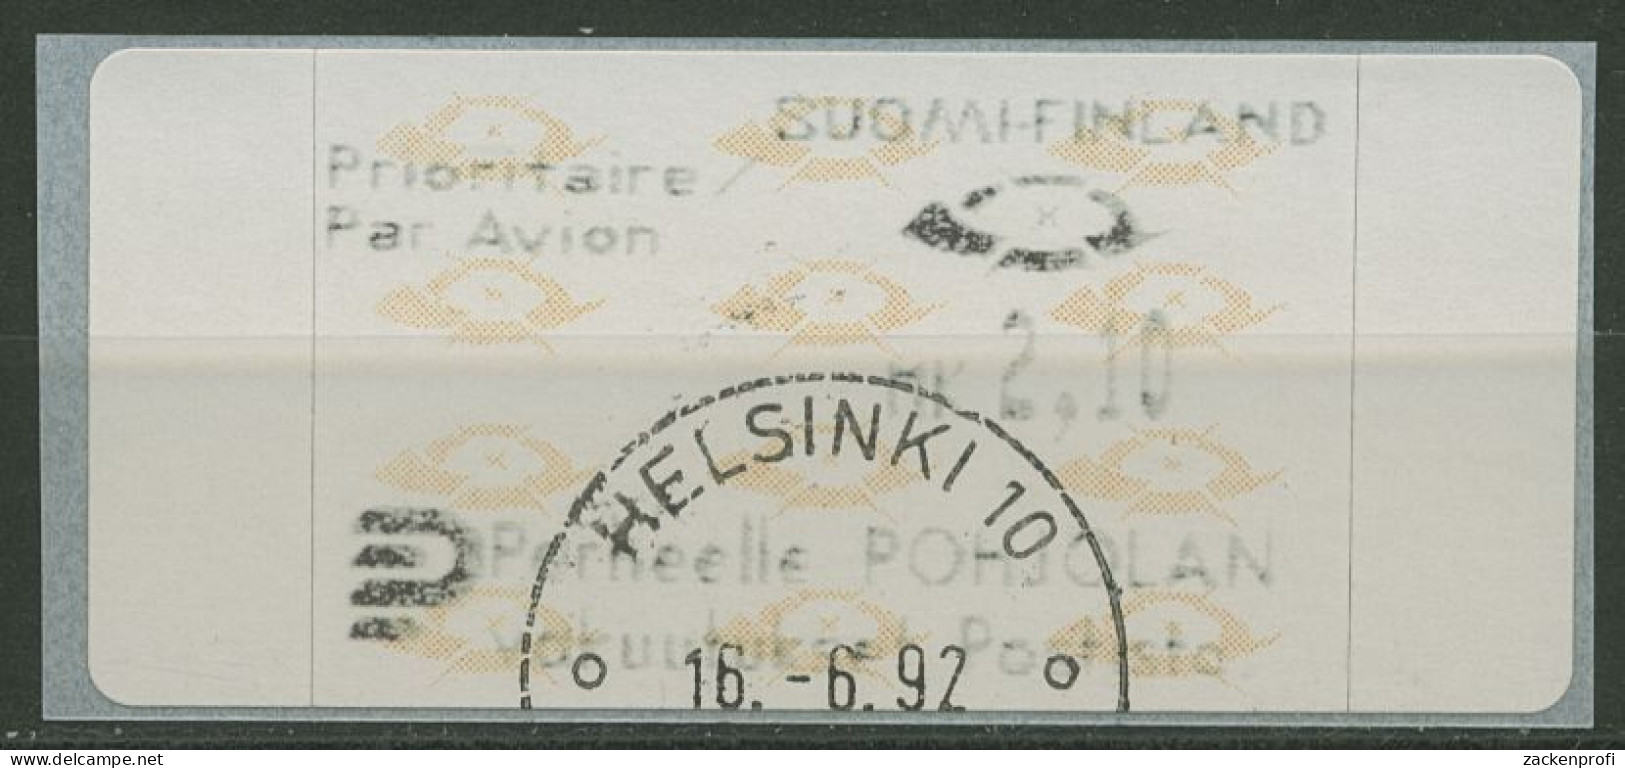 Finnland Automatenmarken 1992 Posthörner Einzelwert ATM 12.3 Z6 Gestempelt - Automatenmarken [ATM]